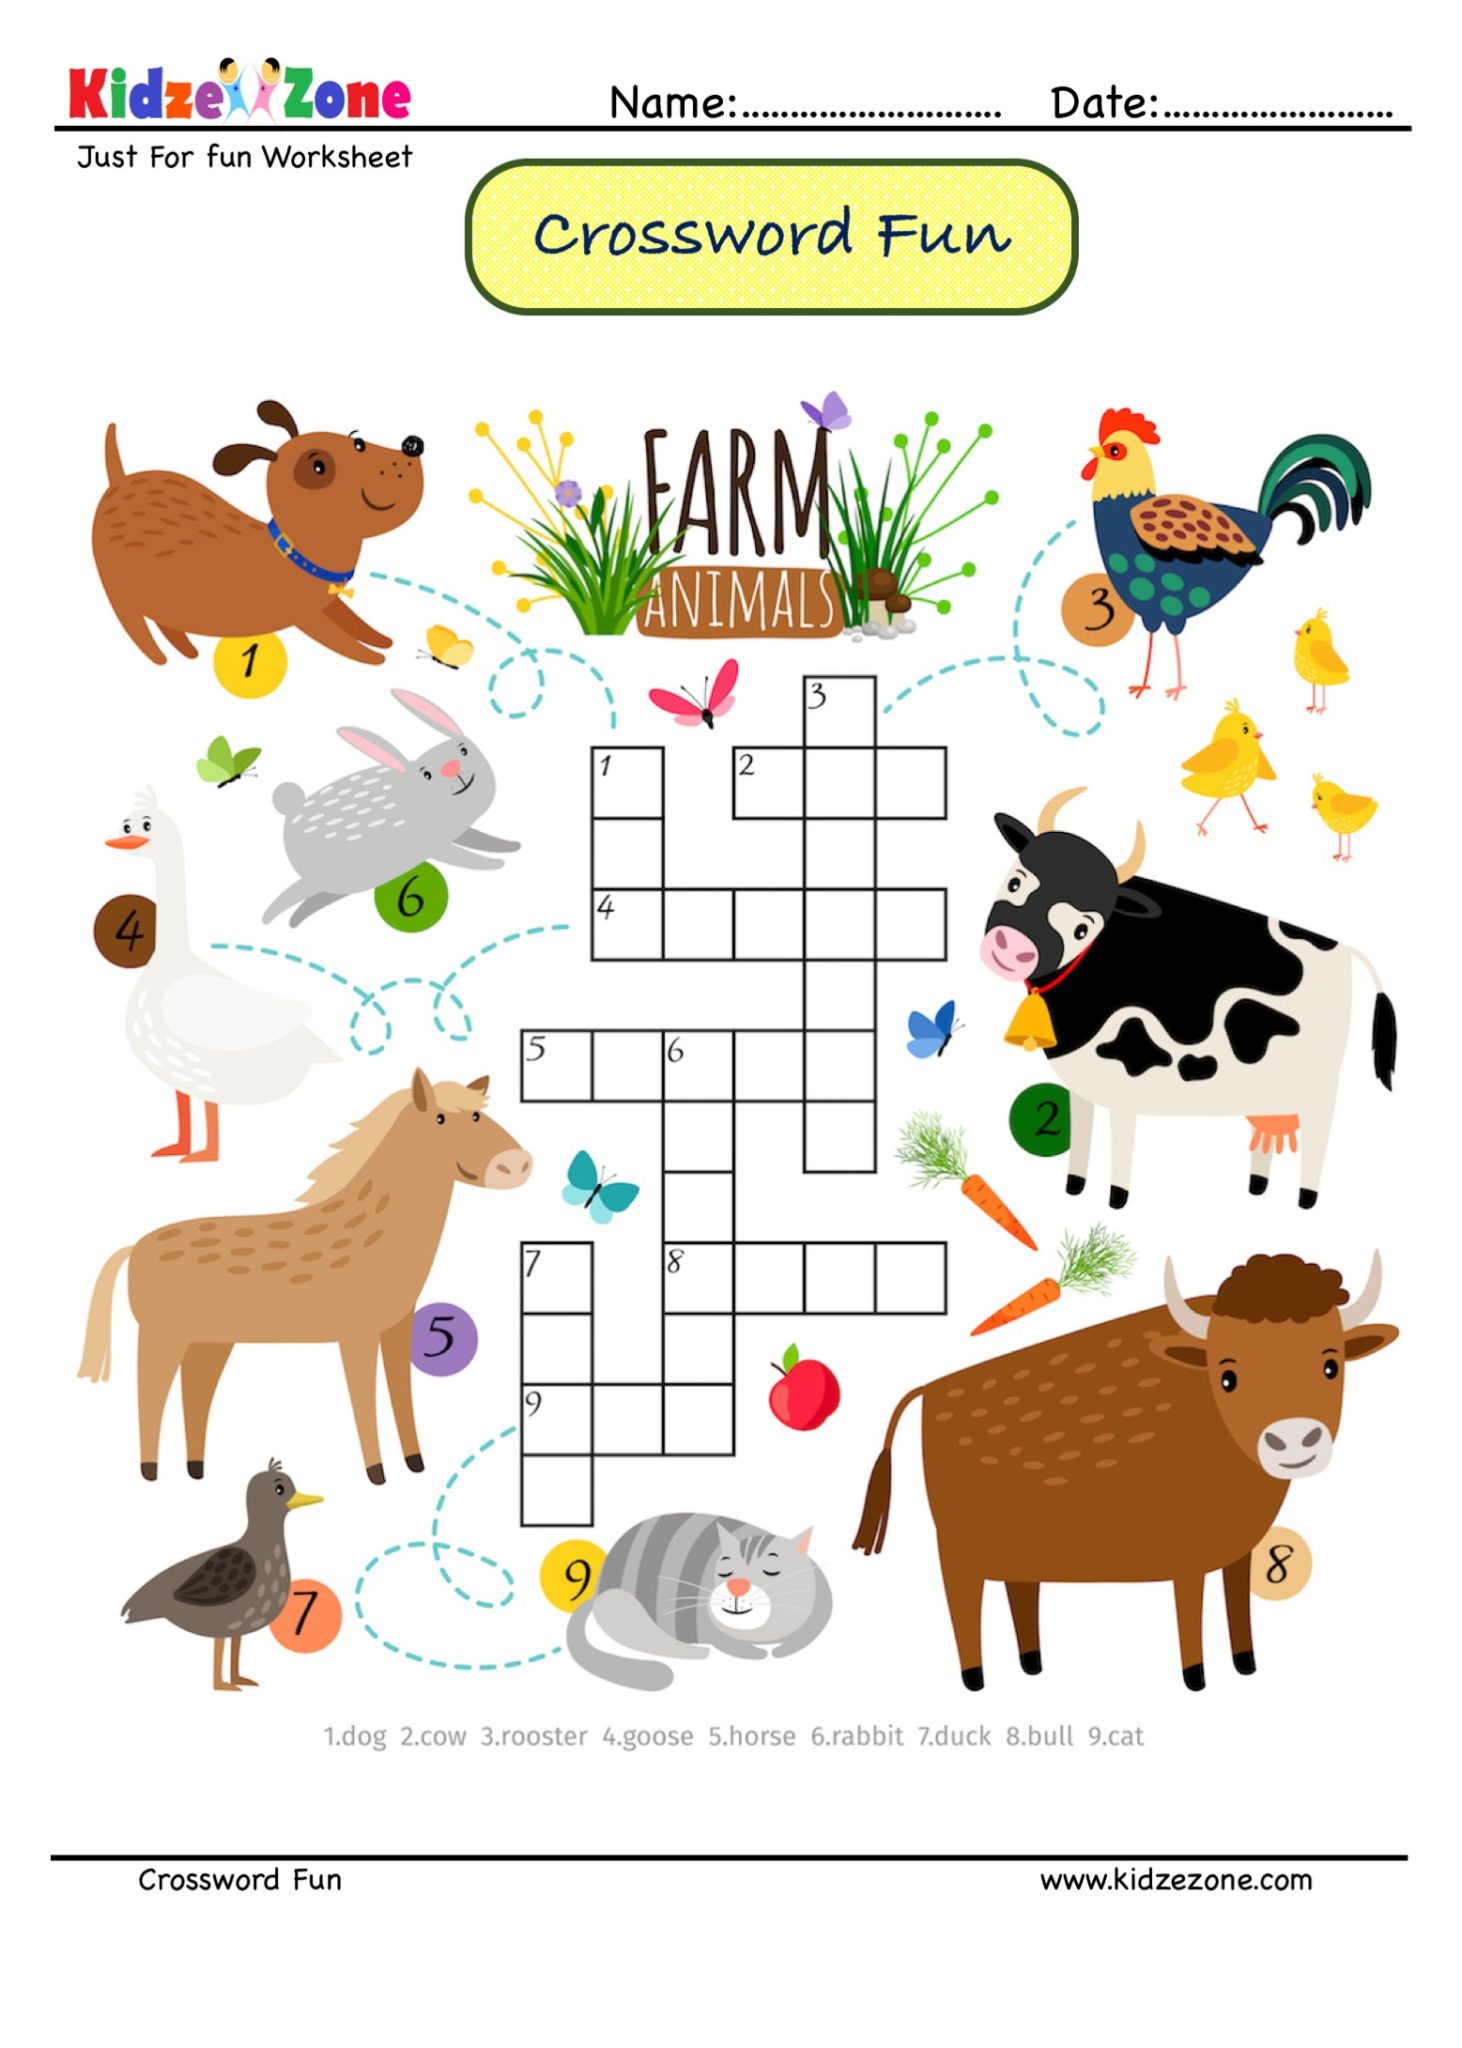 identify-the-animals-crossword-puzzle-12-kidzezone